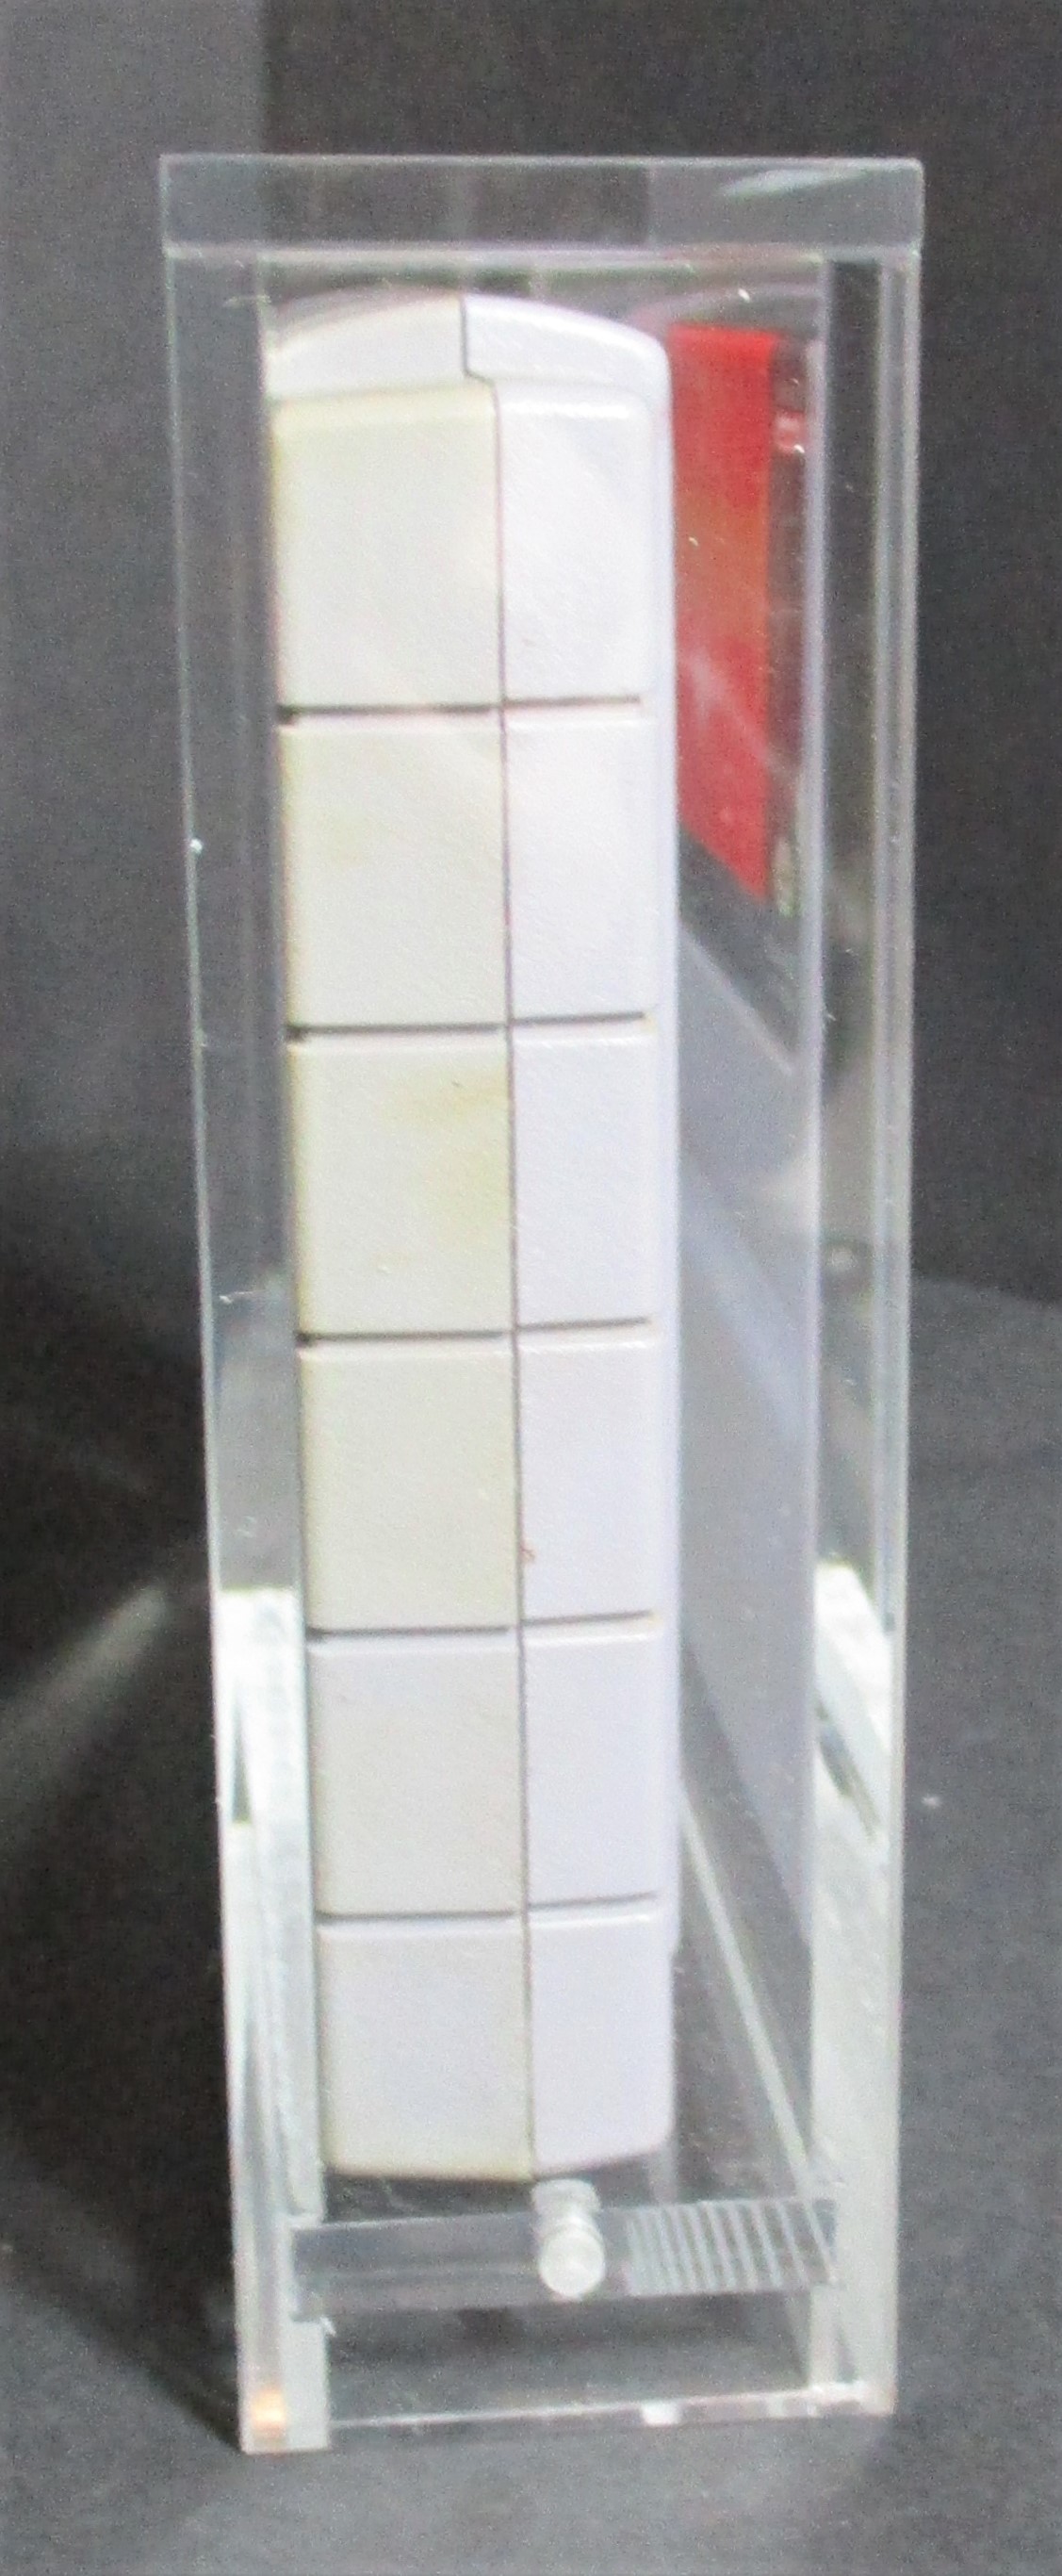 5x SNES Loose Cartridge Acrylic Display Guard (60033)